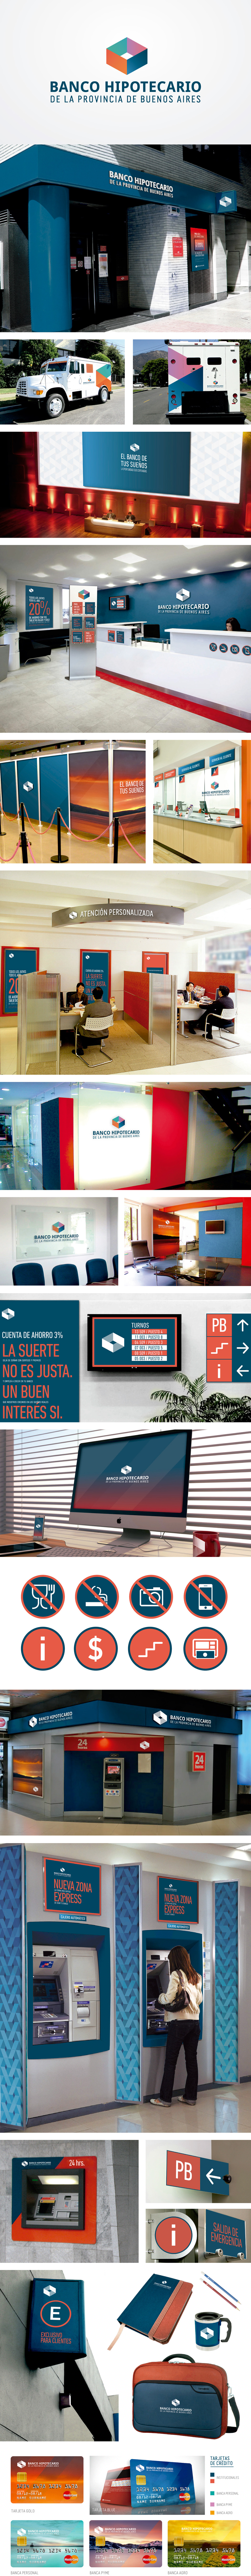 banco Bank identidad identity design tipografia red blue casa home hipotecario Campaña publicidad sistema